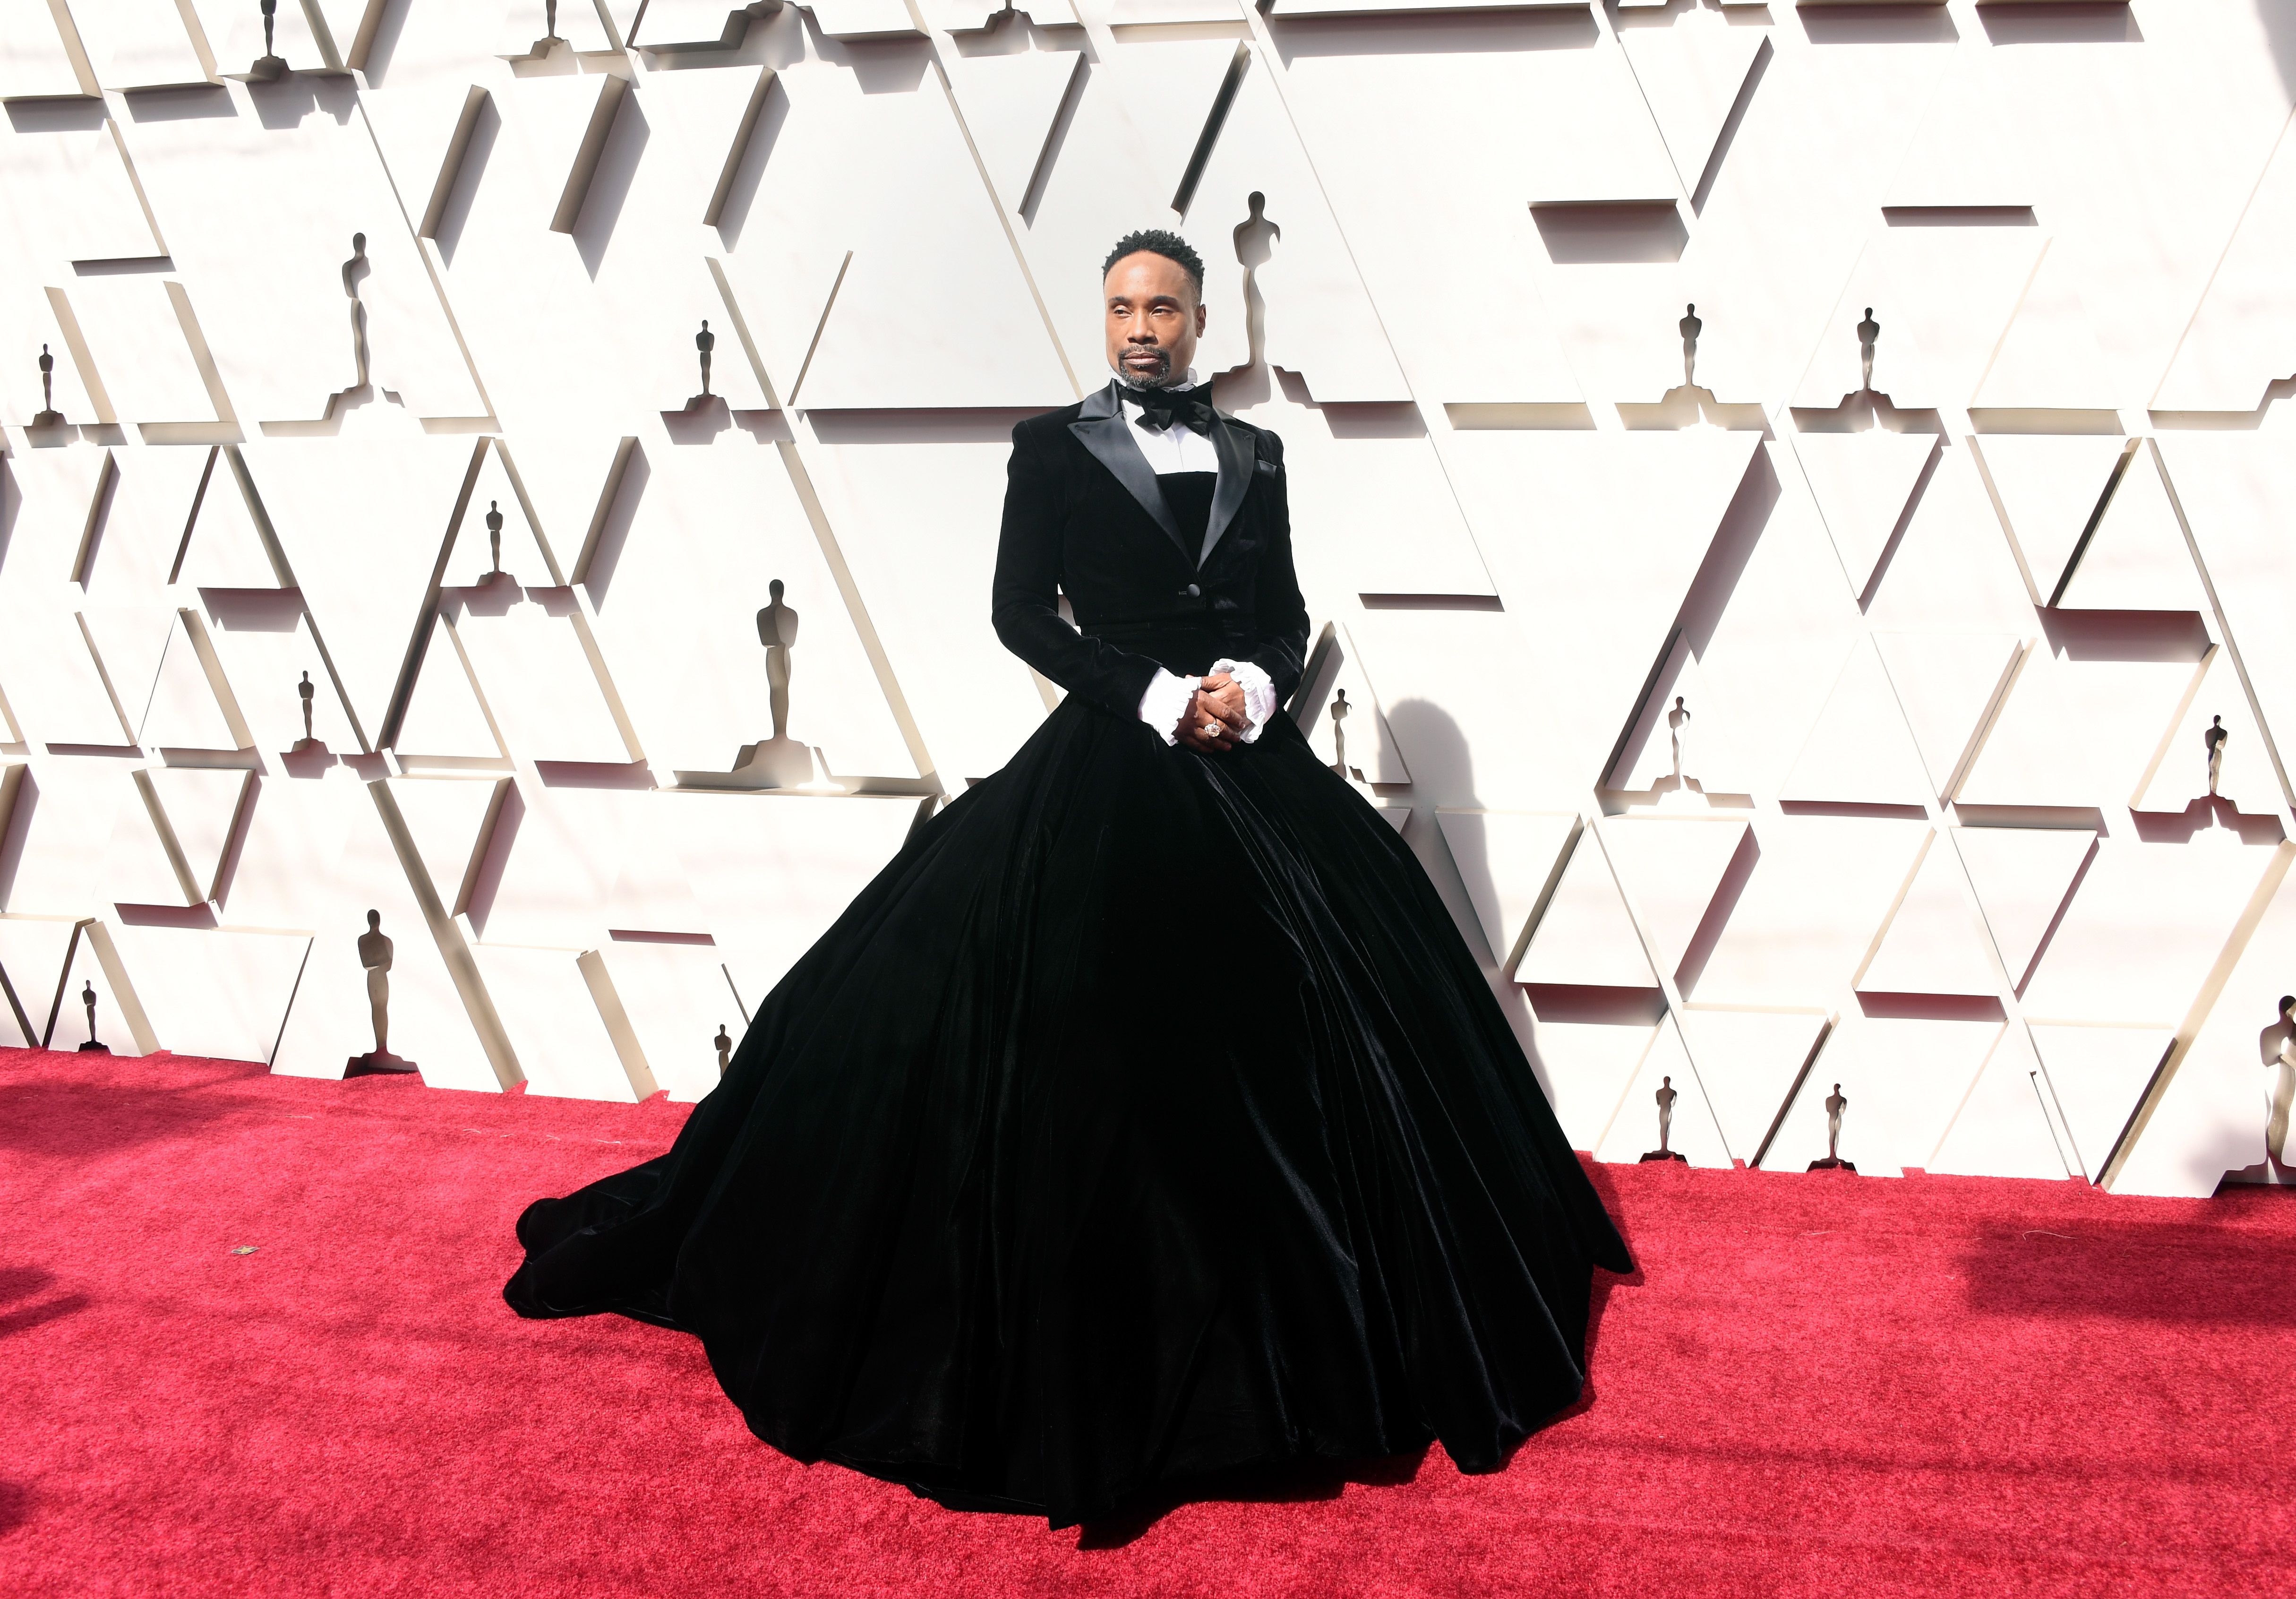 <p><strong>Били Портър на наградите Оскар през 2019 г.</strong></p>

<p>Били Портър в рокля смокинг беше интересен и запомнящ се, защото демонстрира полово неутрална мода на червения килим по един наистина експлозивен и категоричен начин. Това е изявление, което не може да бъде пренебрегнато.</p>